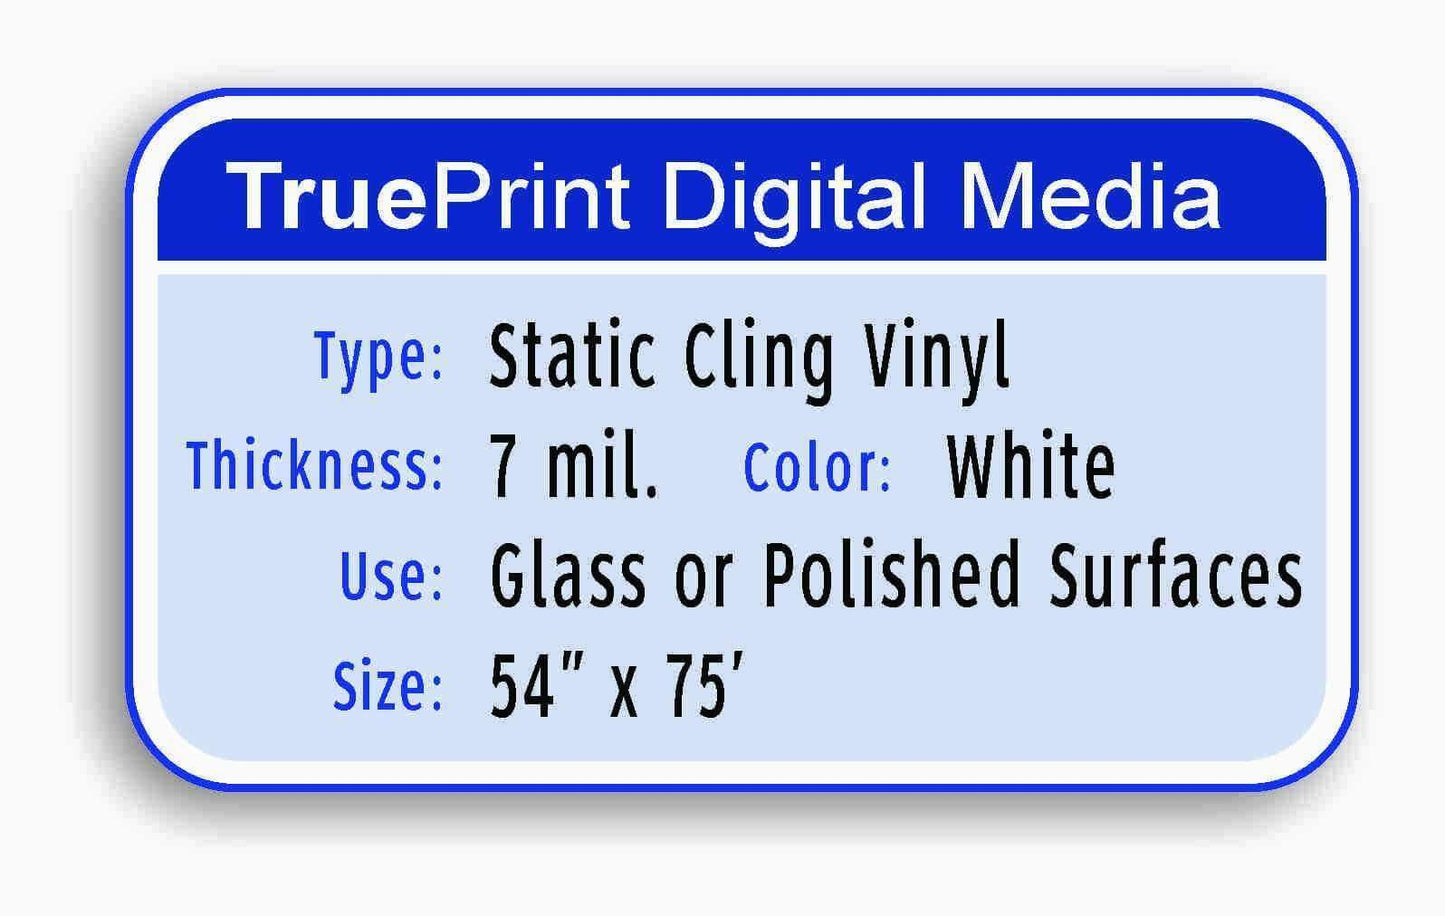 TruePrint 7mil White Static Cling Vinyl 54"